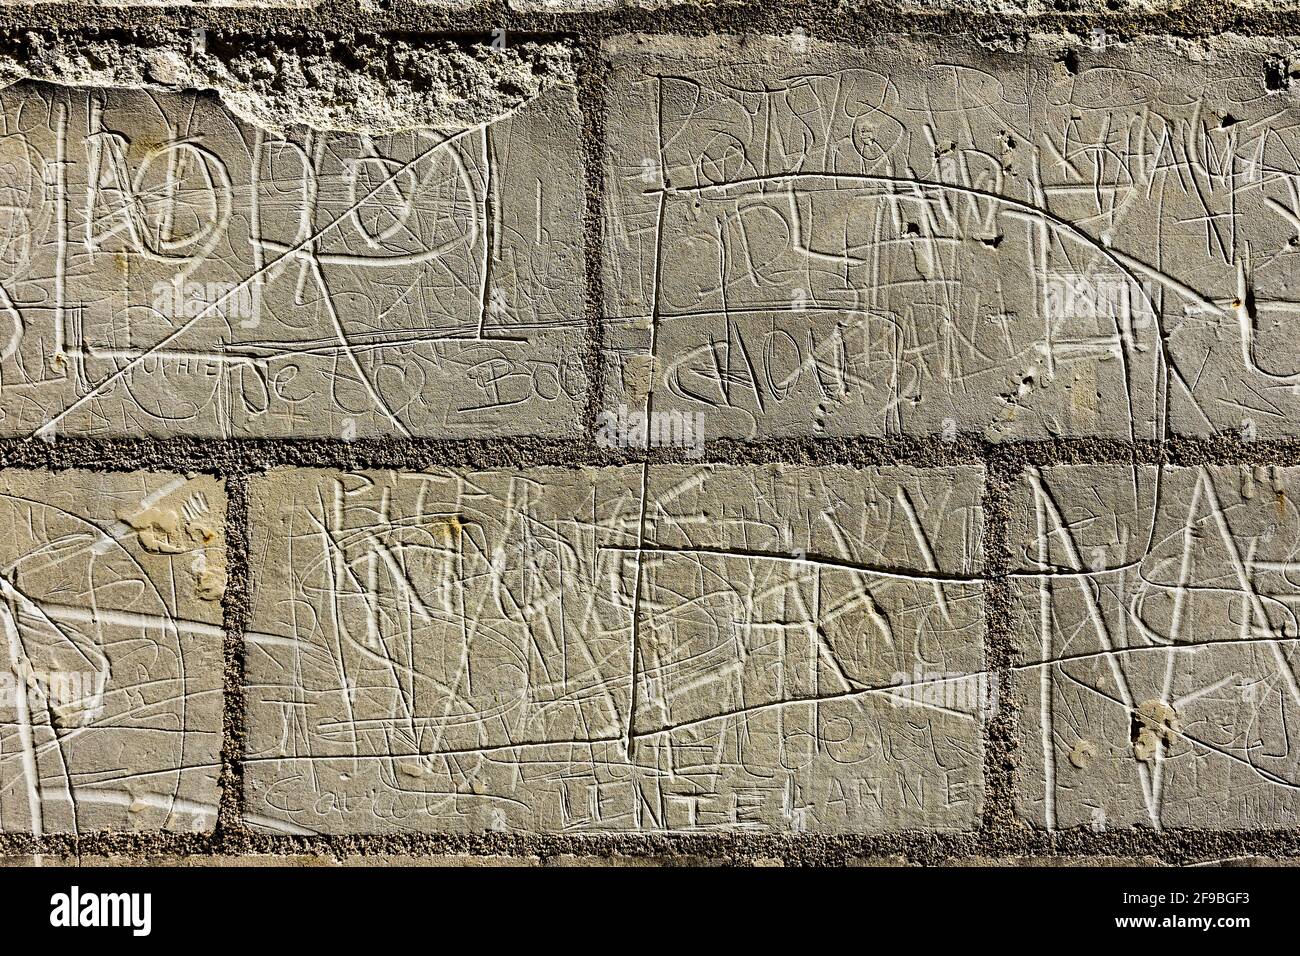 Namen und Initialen, die in Steinmauern zerkratzt wurden - Loches, Indre-et-Loire, Frankreich. Stockfoto